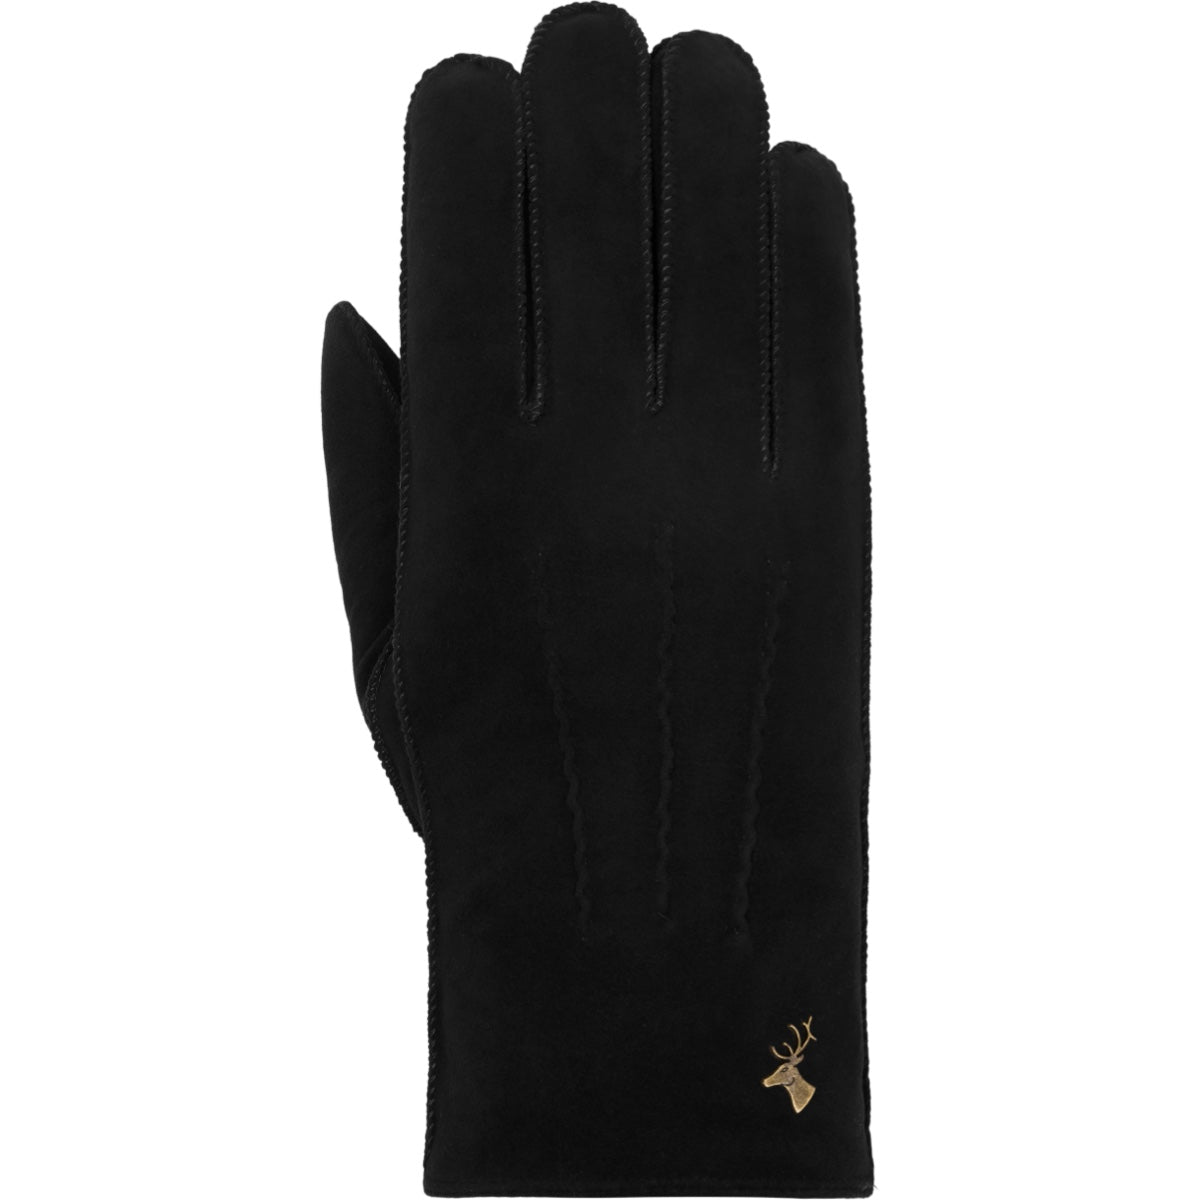 Suede Leather Gloves Black Matthew - Schwartz & von Halen® - Premium Leather Gloves - 1